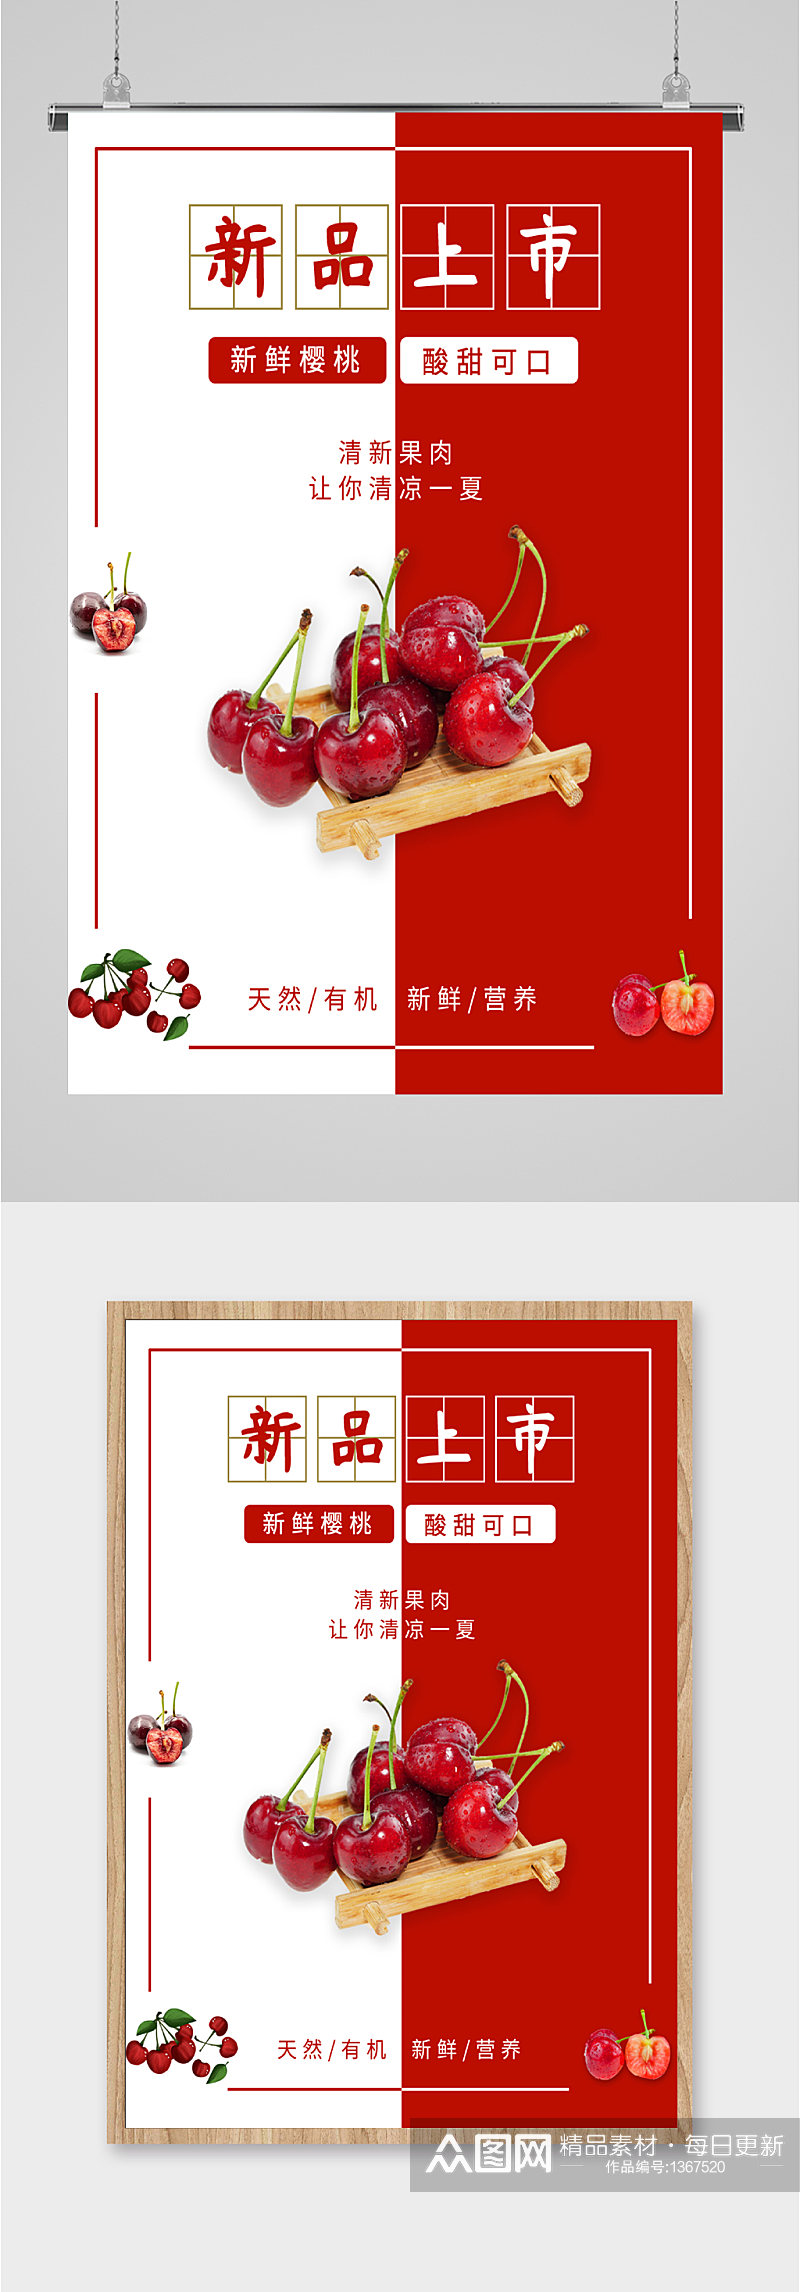 樱桃水果上市促销海报素材